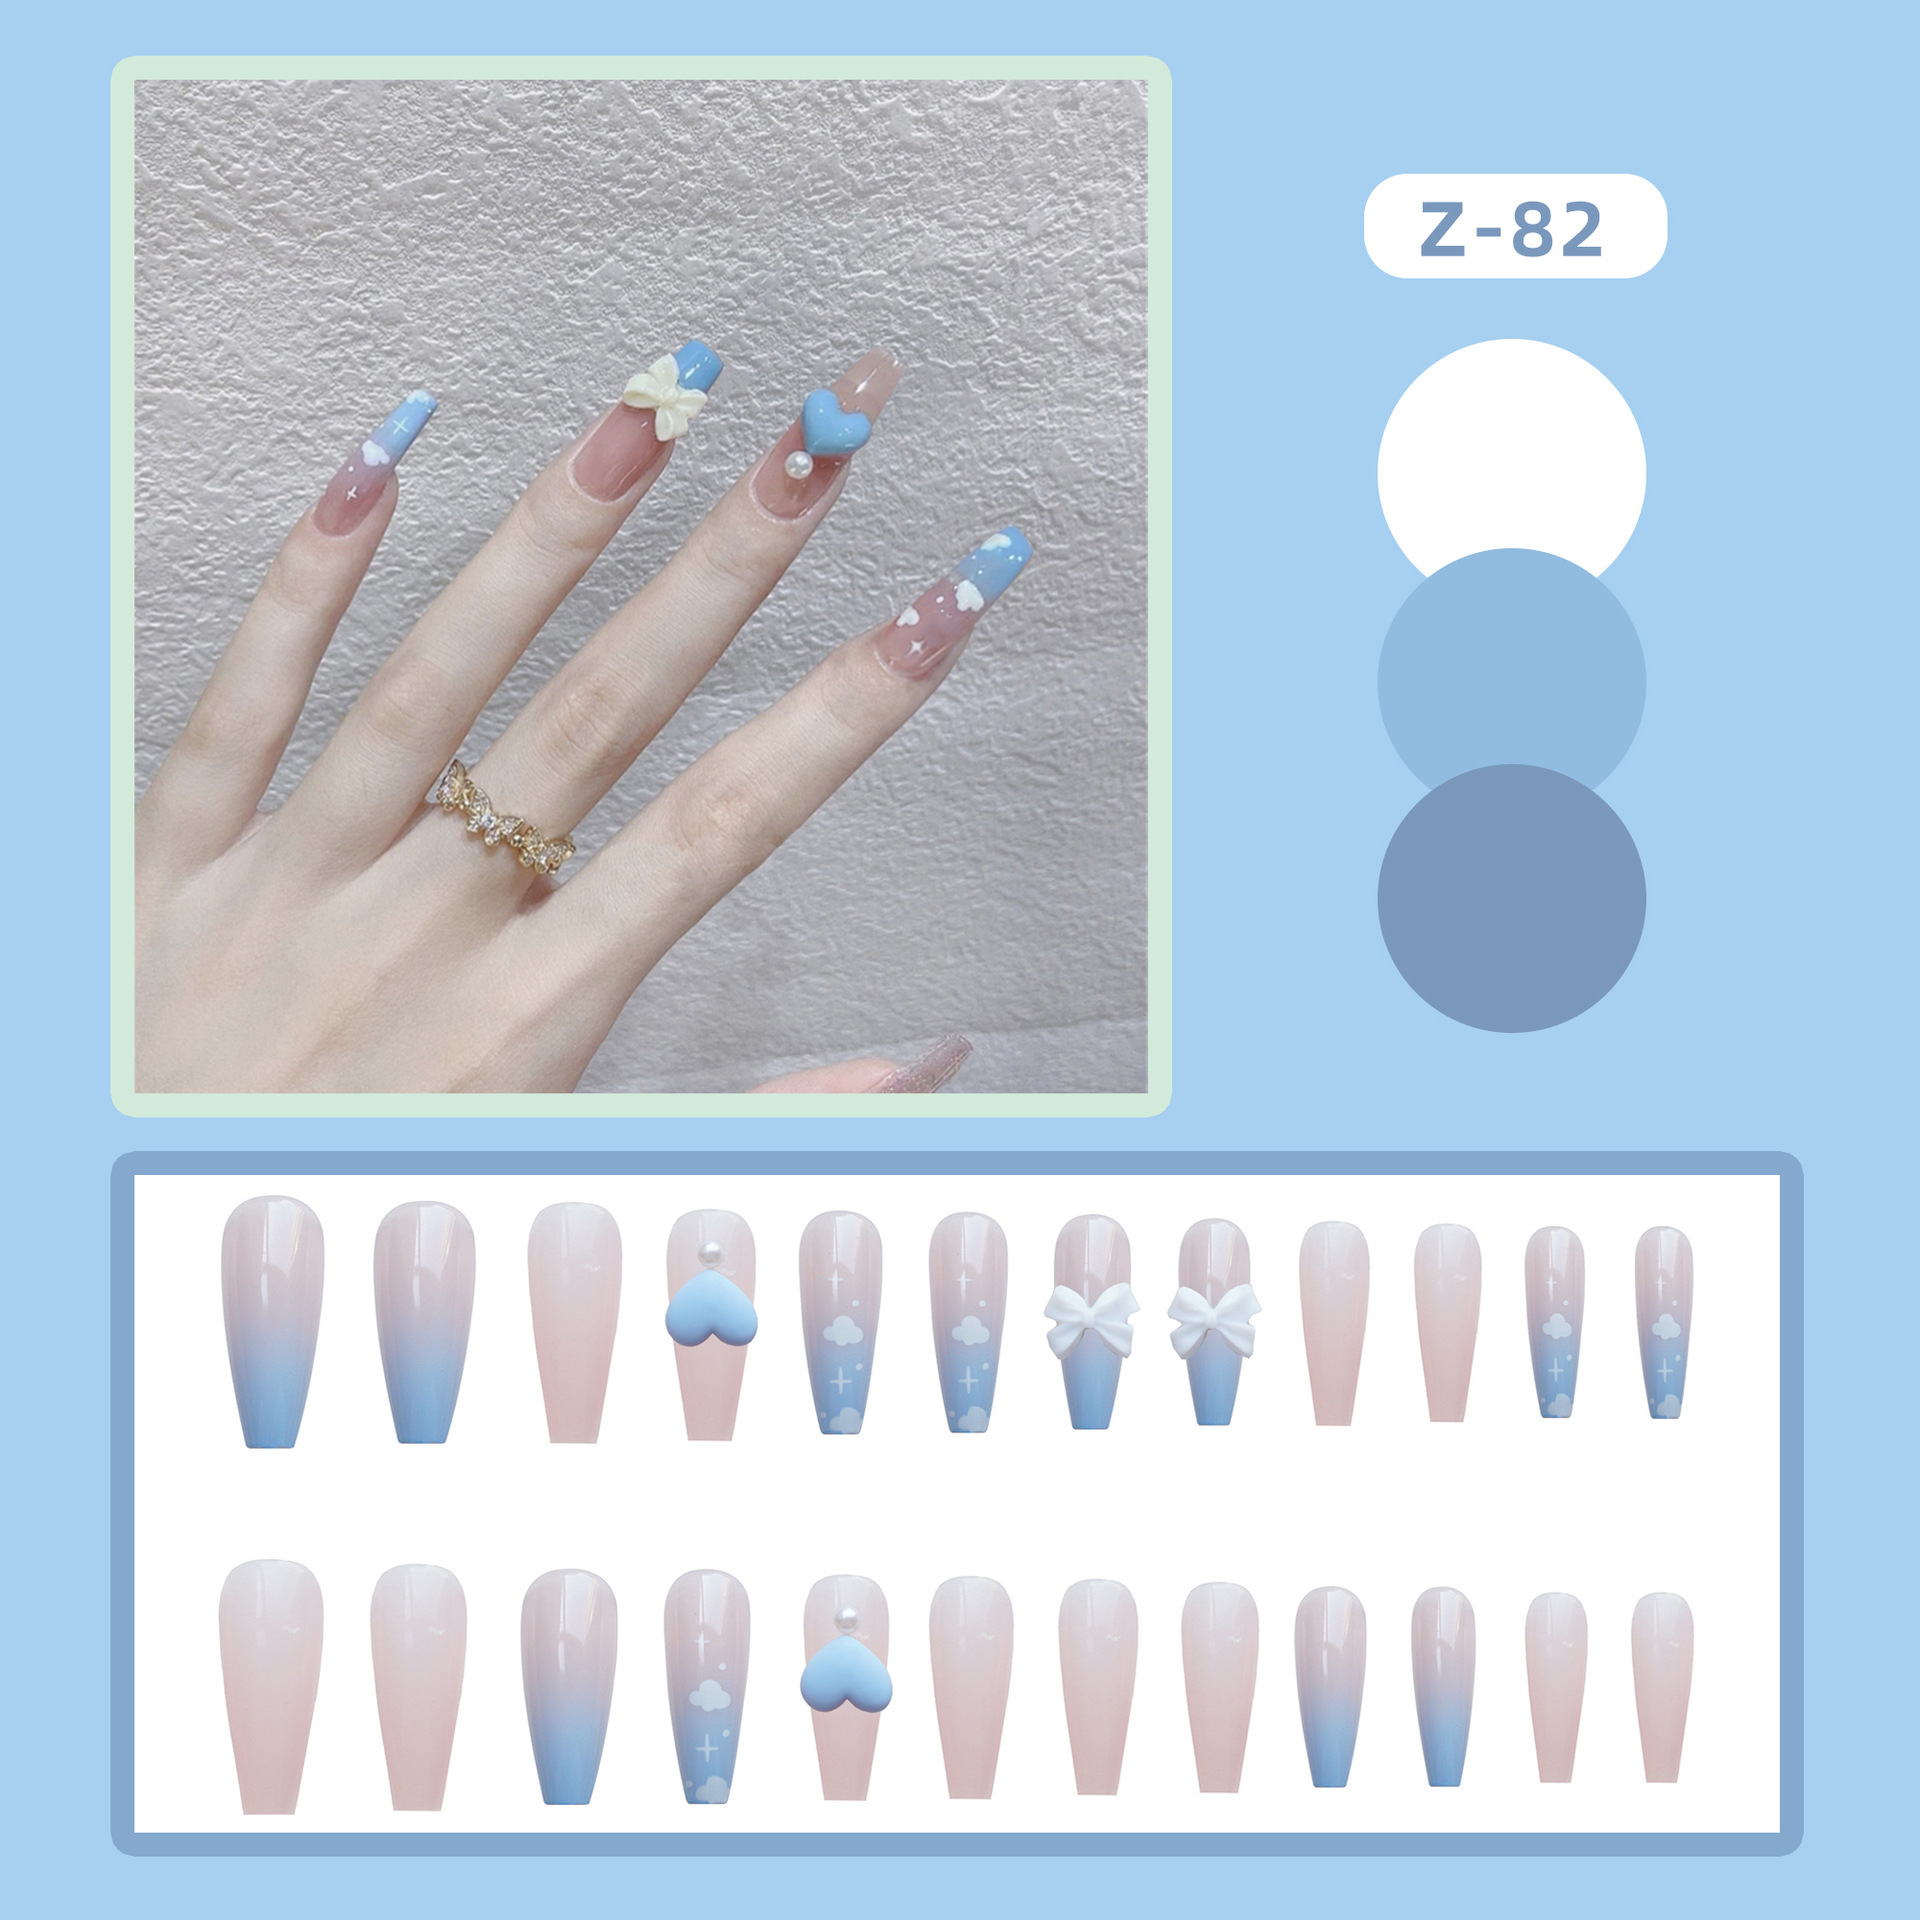 Màu nail xanh cổ điển classic blue đang được lăng xê rần rần: 